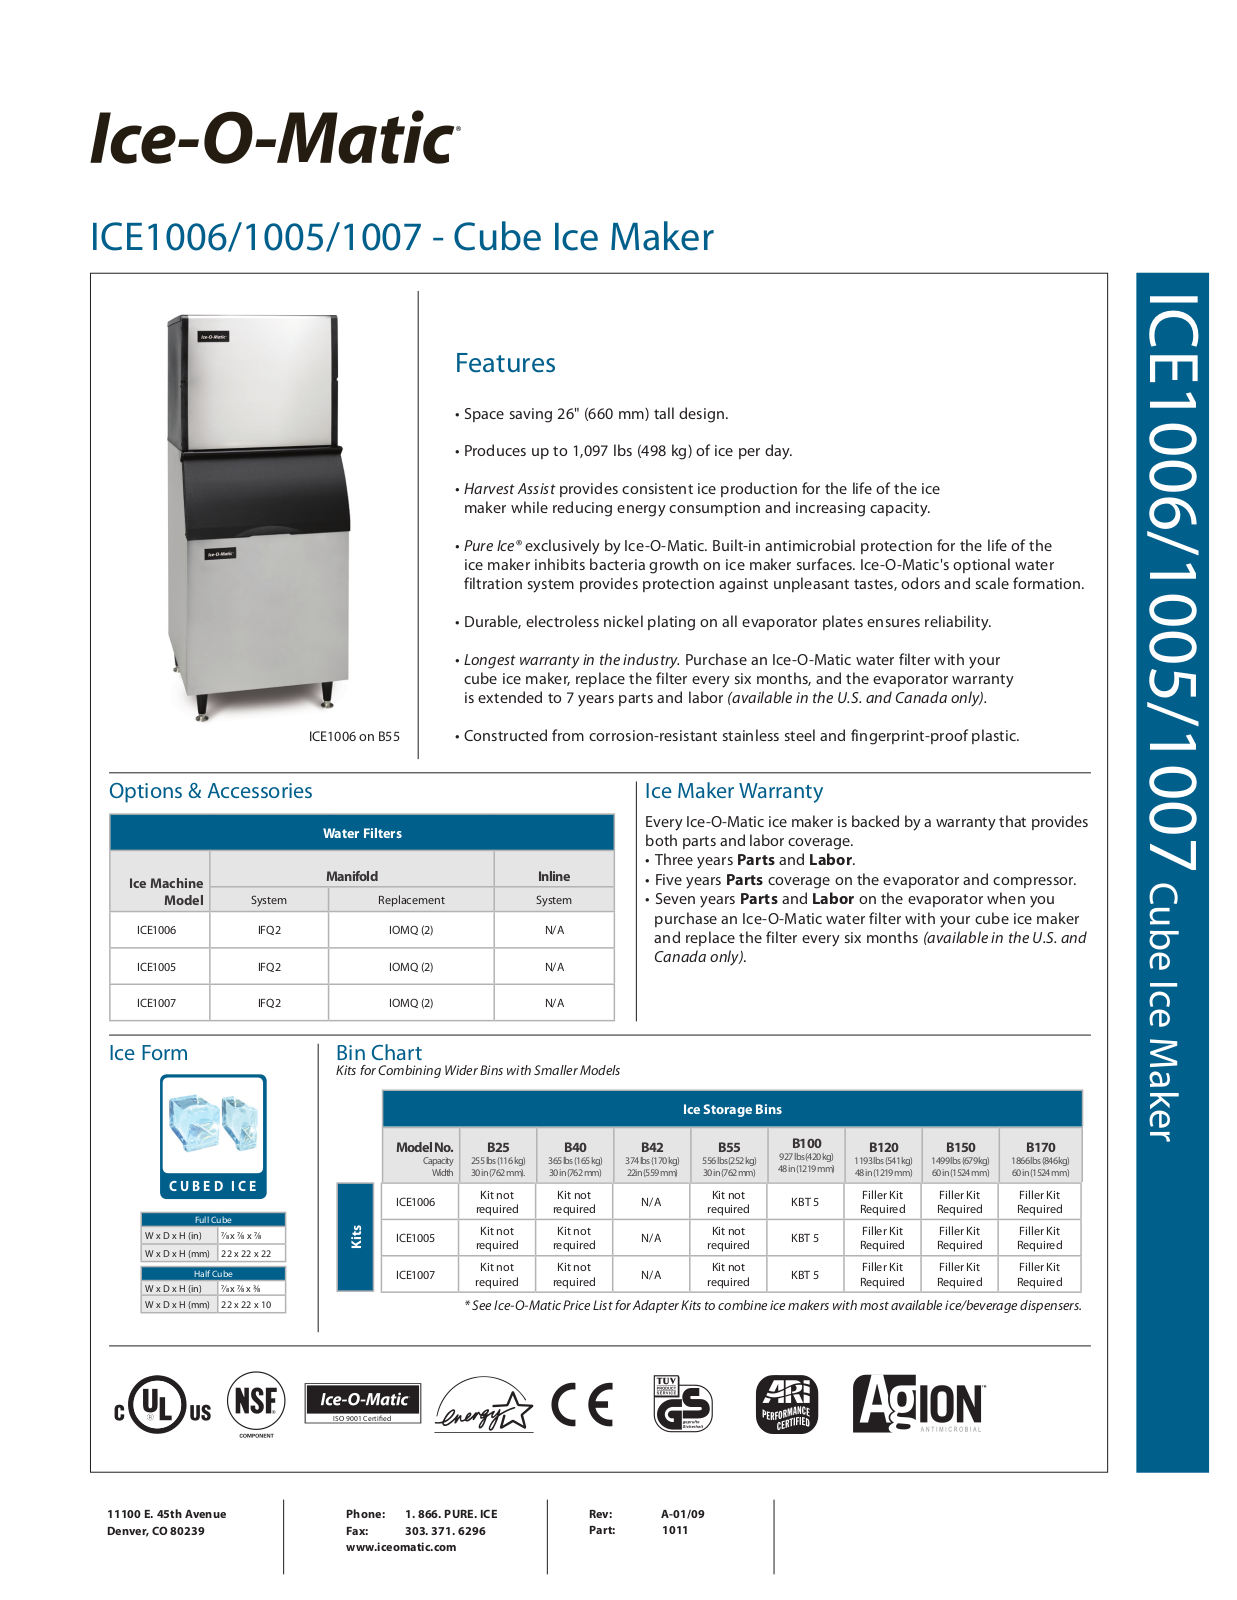 Ice-O-Matic ICE1007, ICE1005 User Manual